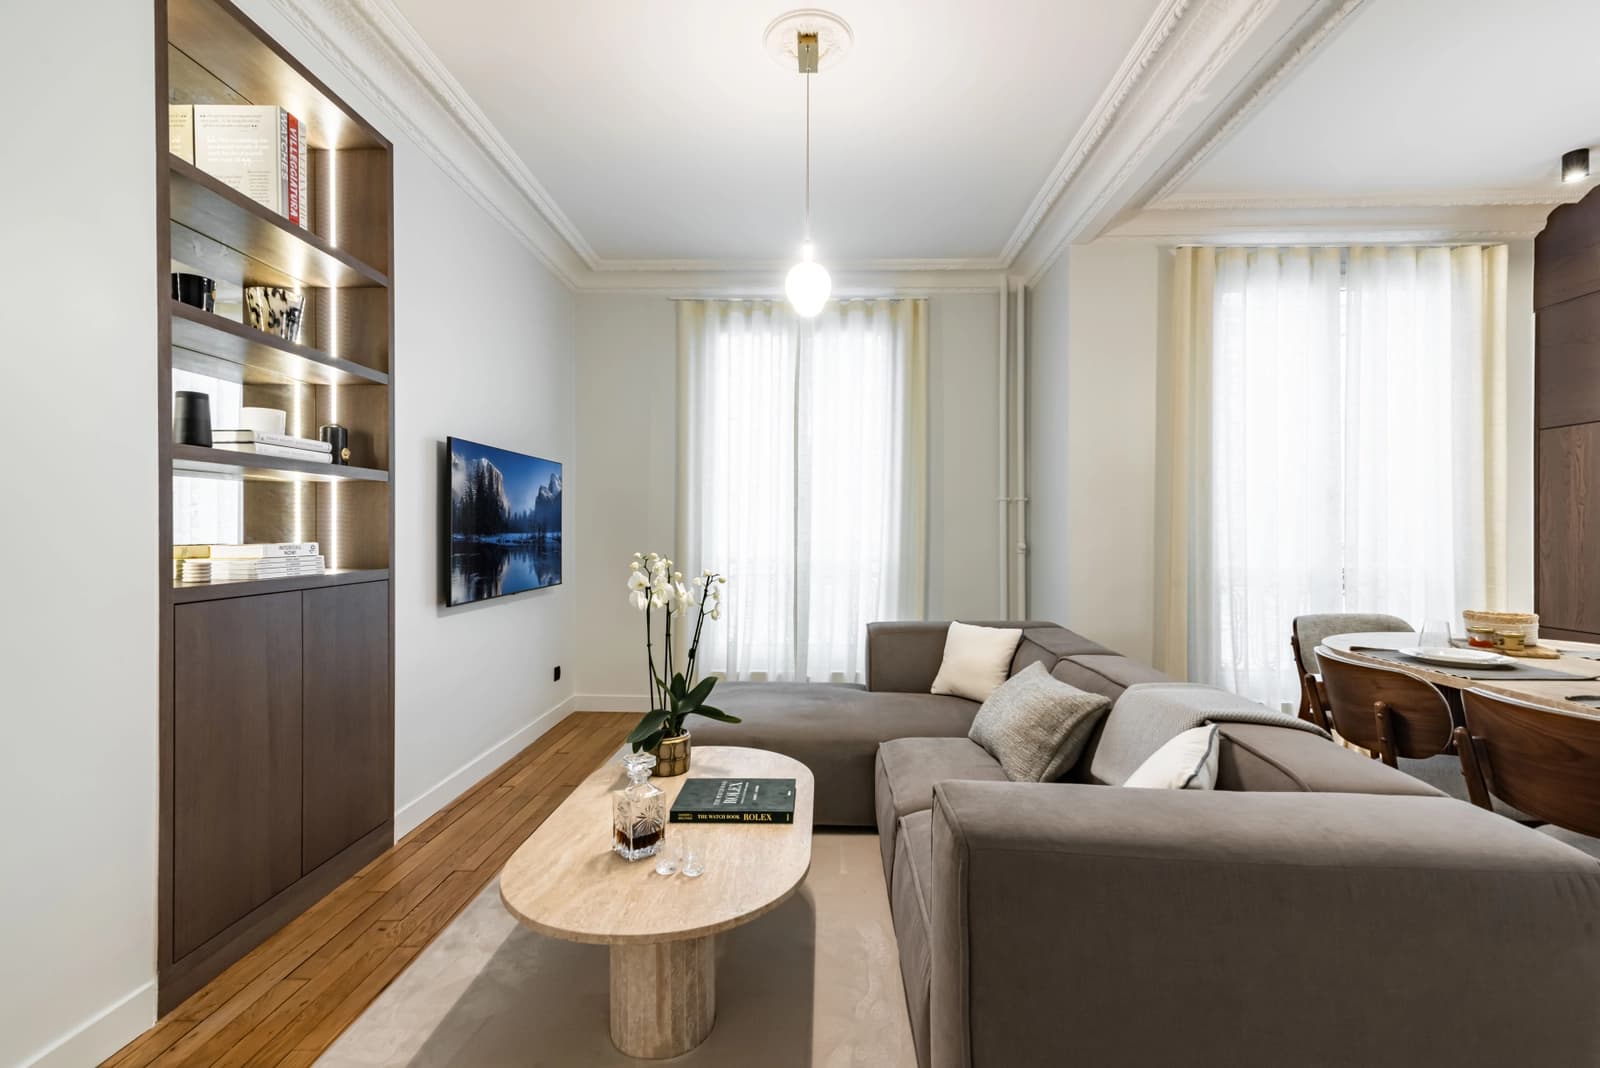 Salon dans Appartement refait par architecte - Trocadéro - 1